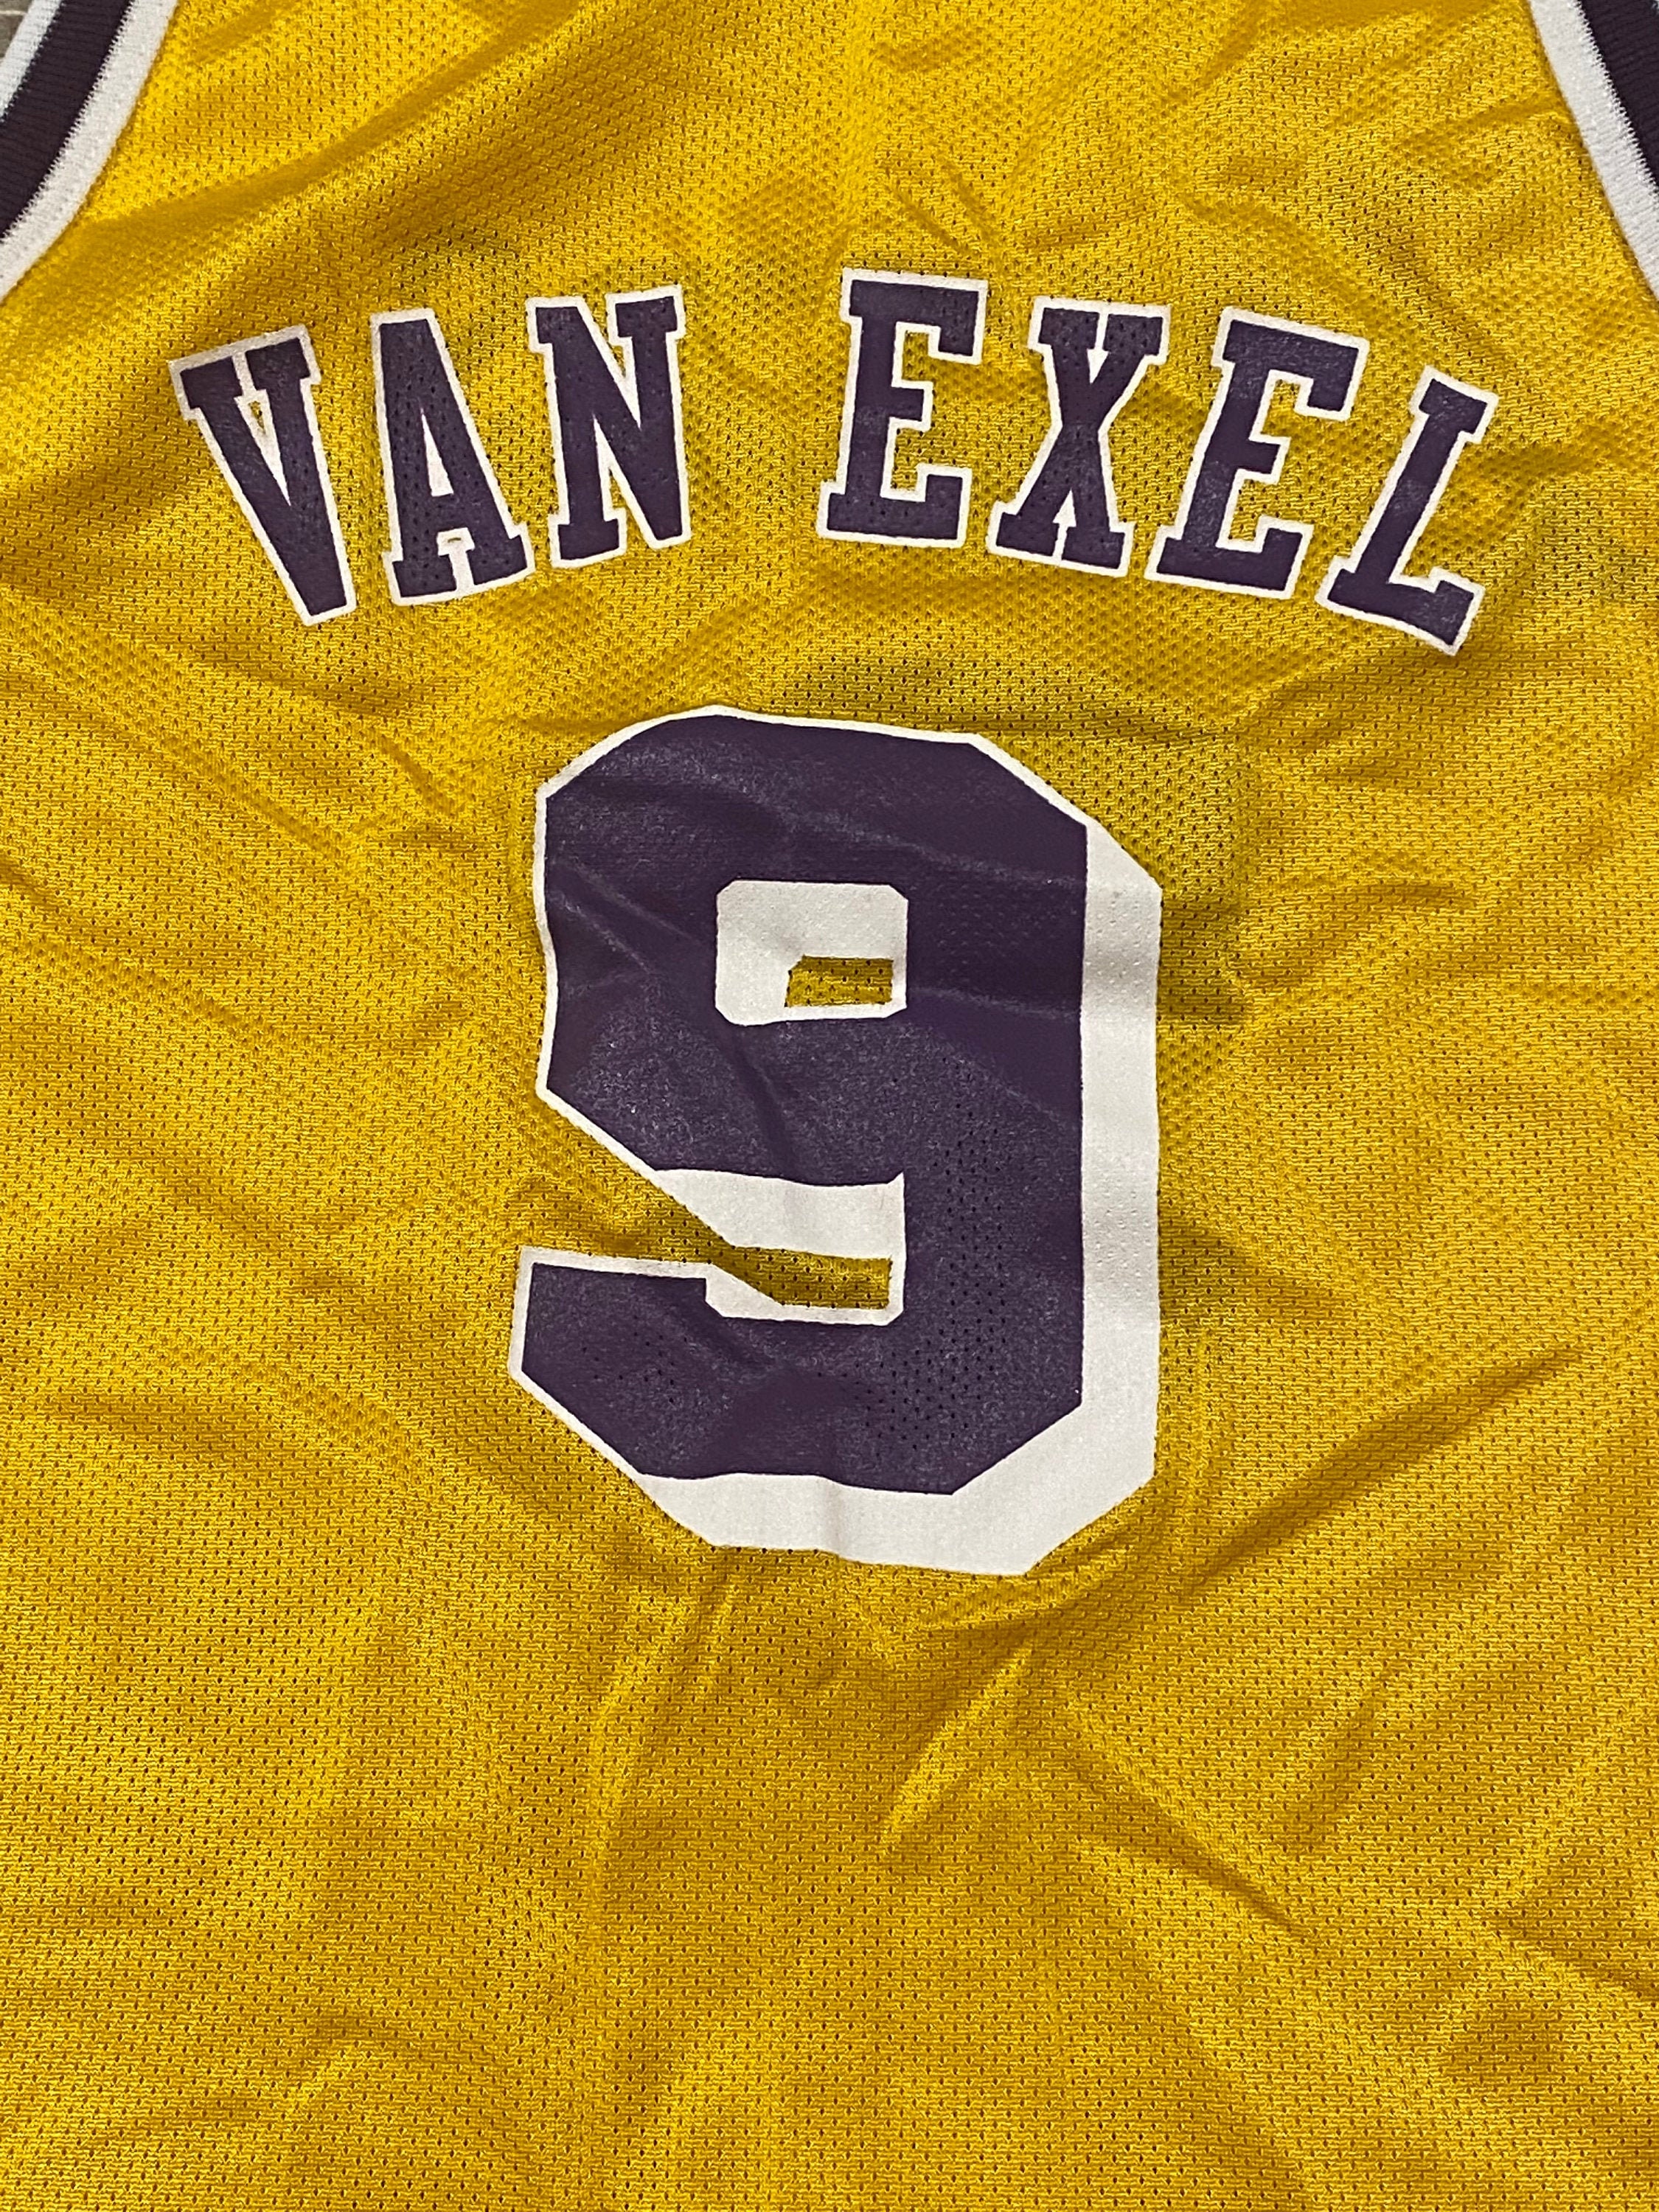 Nick Van Exel Jersey for sale